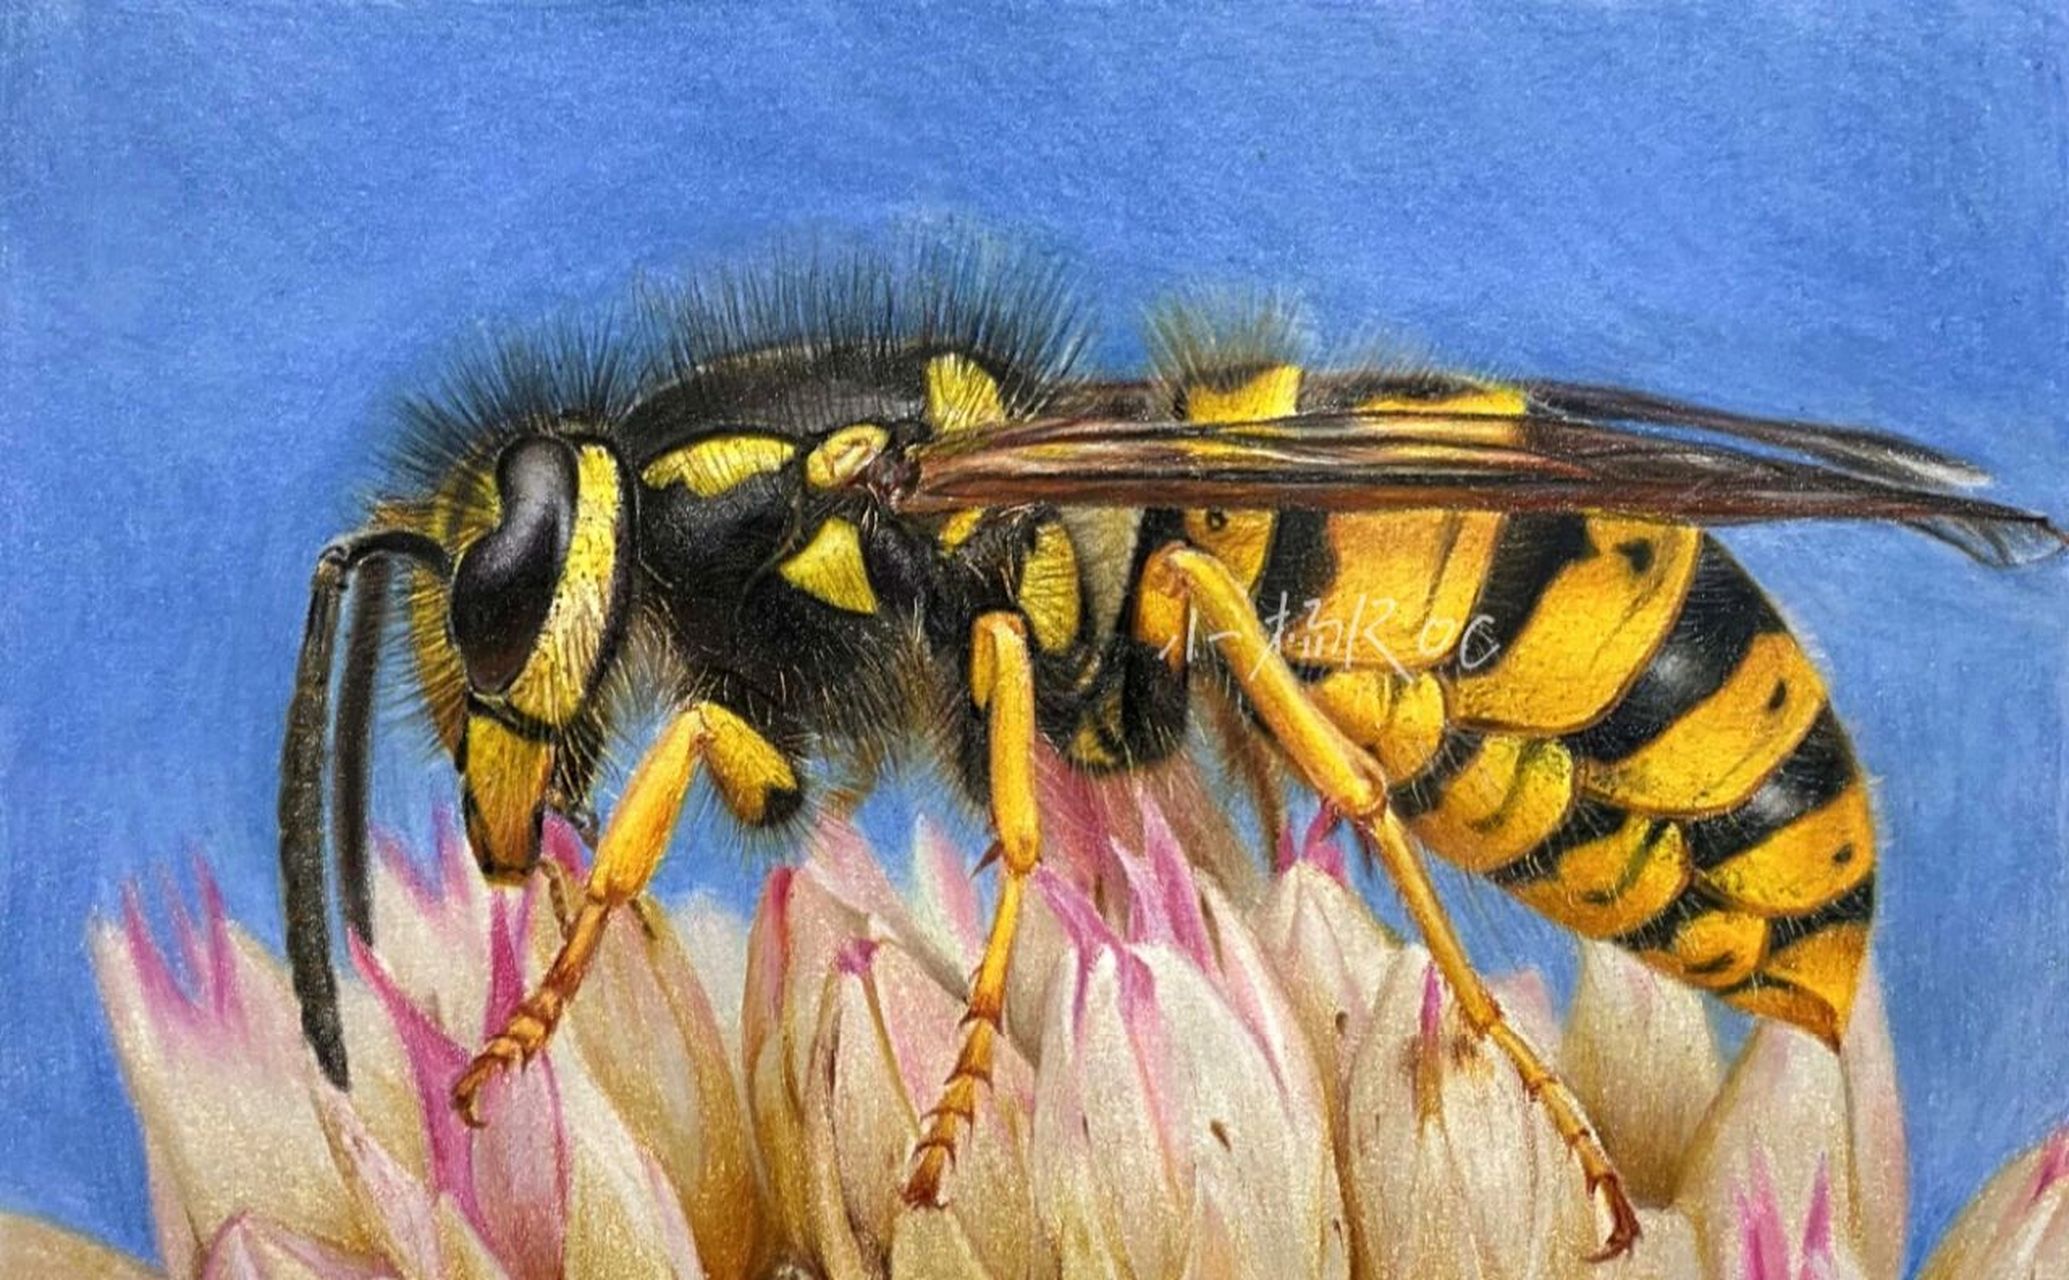 大黄蜂,彩铅手绘(步骤图) 绘画用的工具: 霹雳马132色油性彩铅,获多福